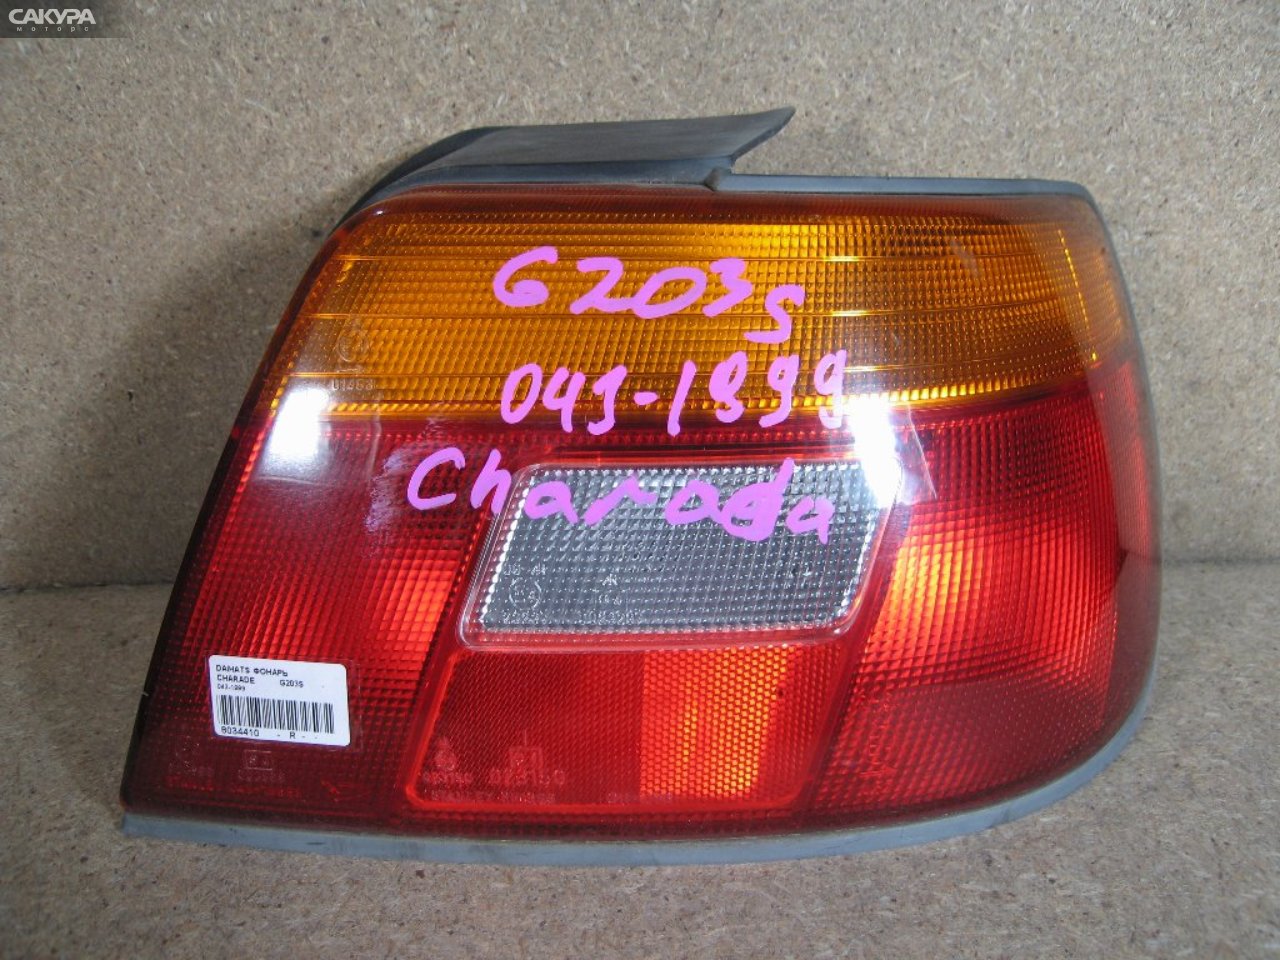 Фонарь стоп-сигнала правый Daihatsu Charade G203S 043-1999: купить в Сакура Абакан.